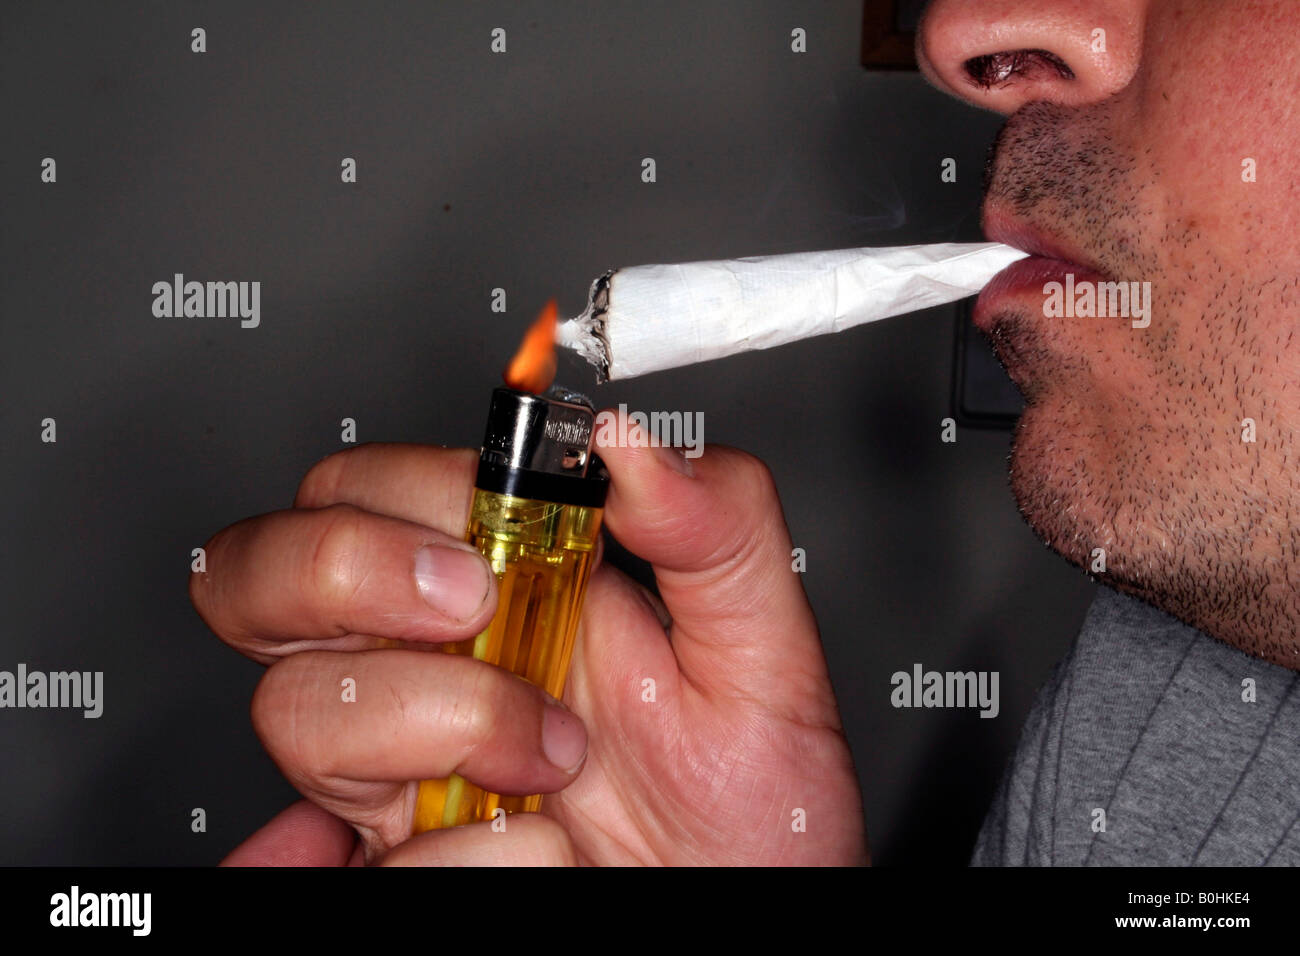 Smoking a joint, pot Stock Photo